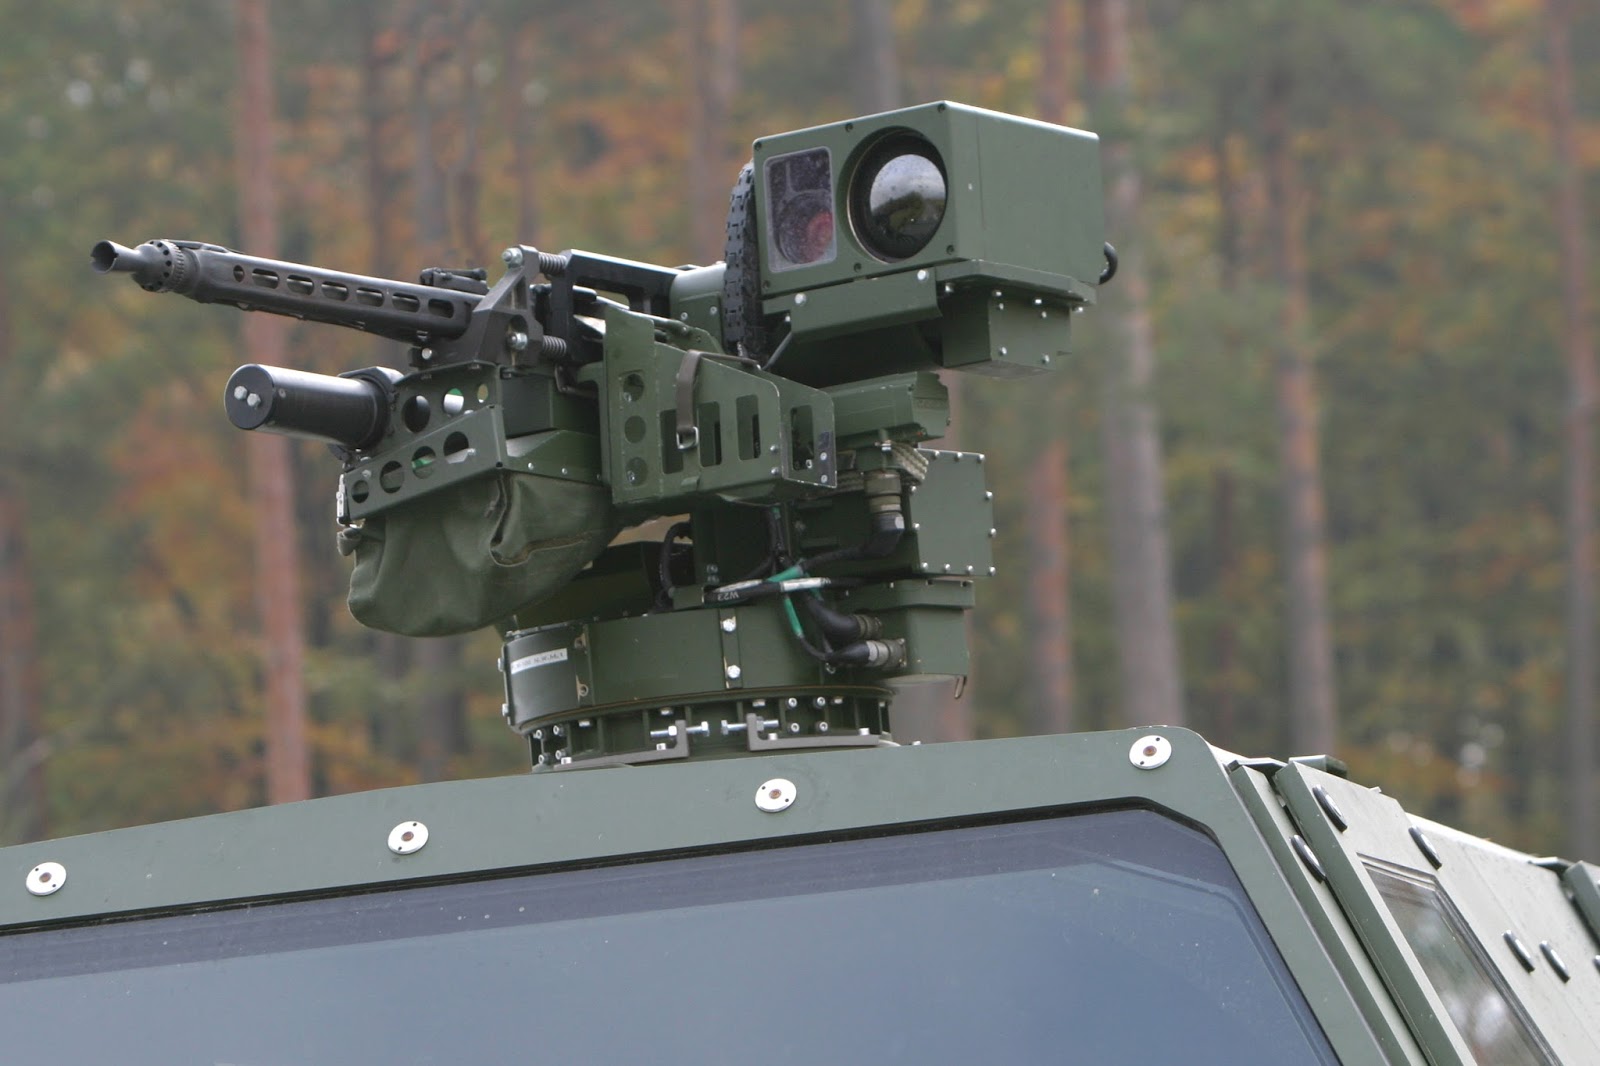 Acima: A torre FLW 100, remotamente controlada, está armada com uma metralhadora MG-3 em calibre 7,62X51 mm. Uma versão mais pesada desta torre, chamada FLW-200 pode ser equipada com uma metralhadora pesada M-3M calibre 12X7 mm (50 BMG)